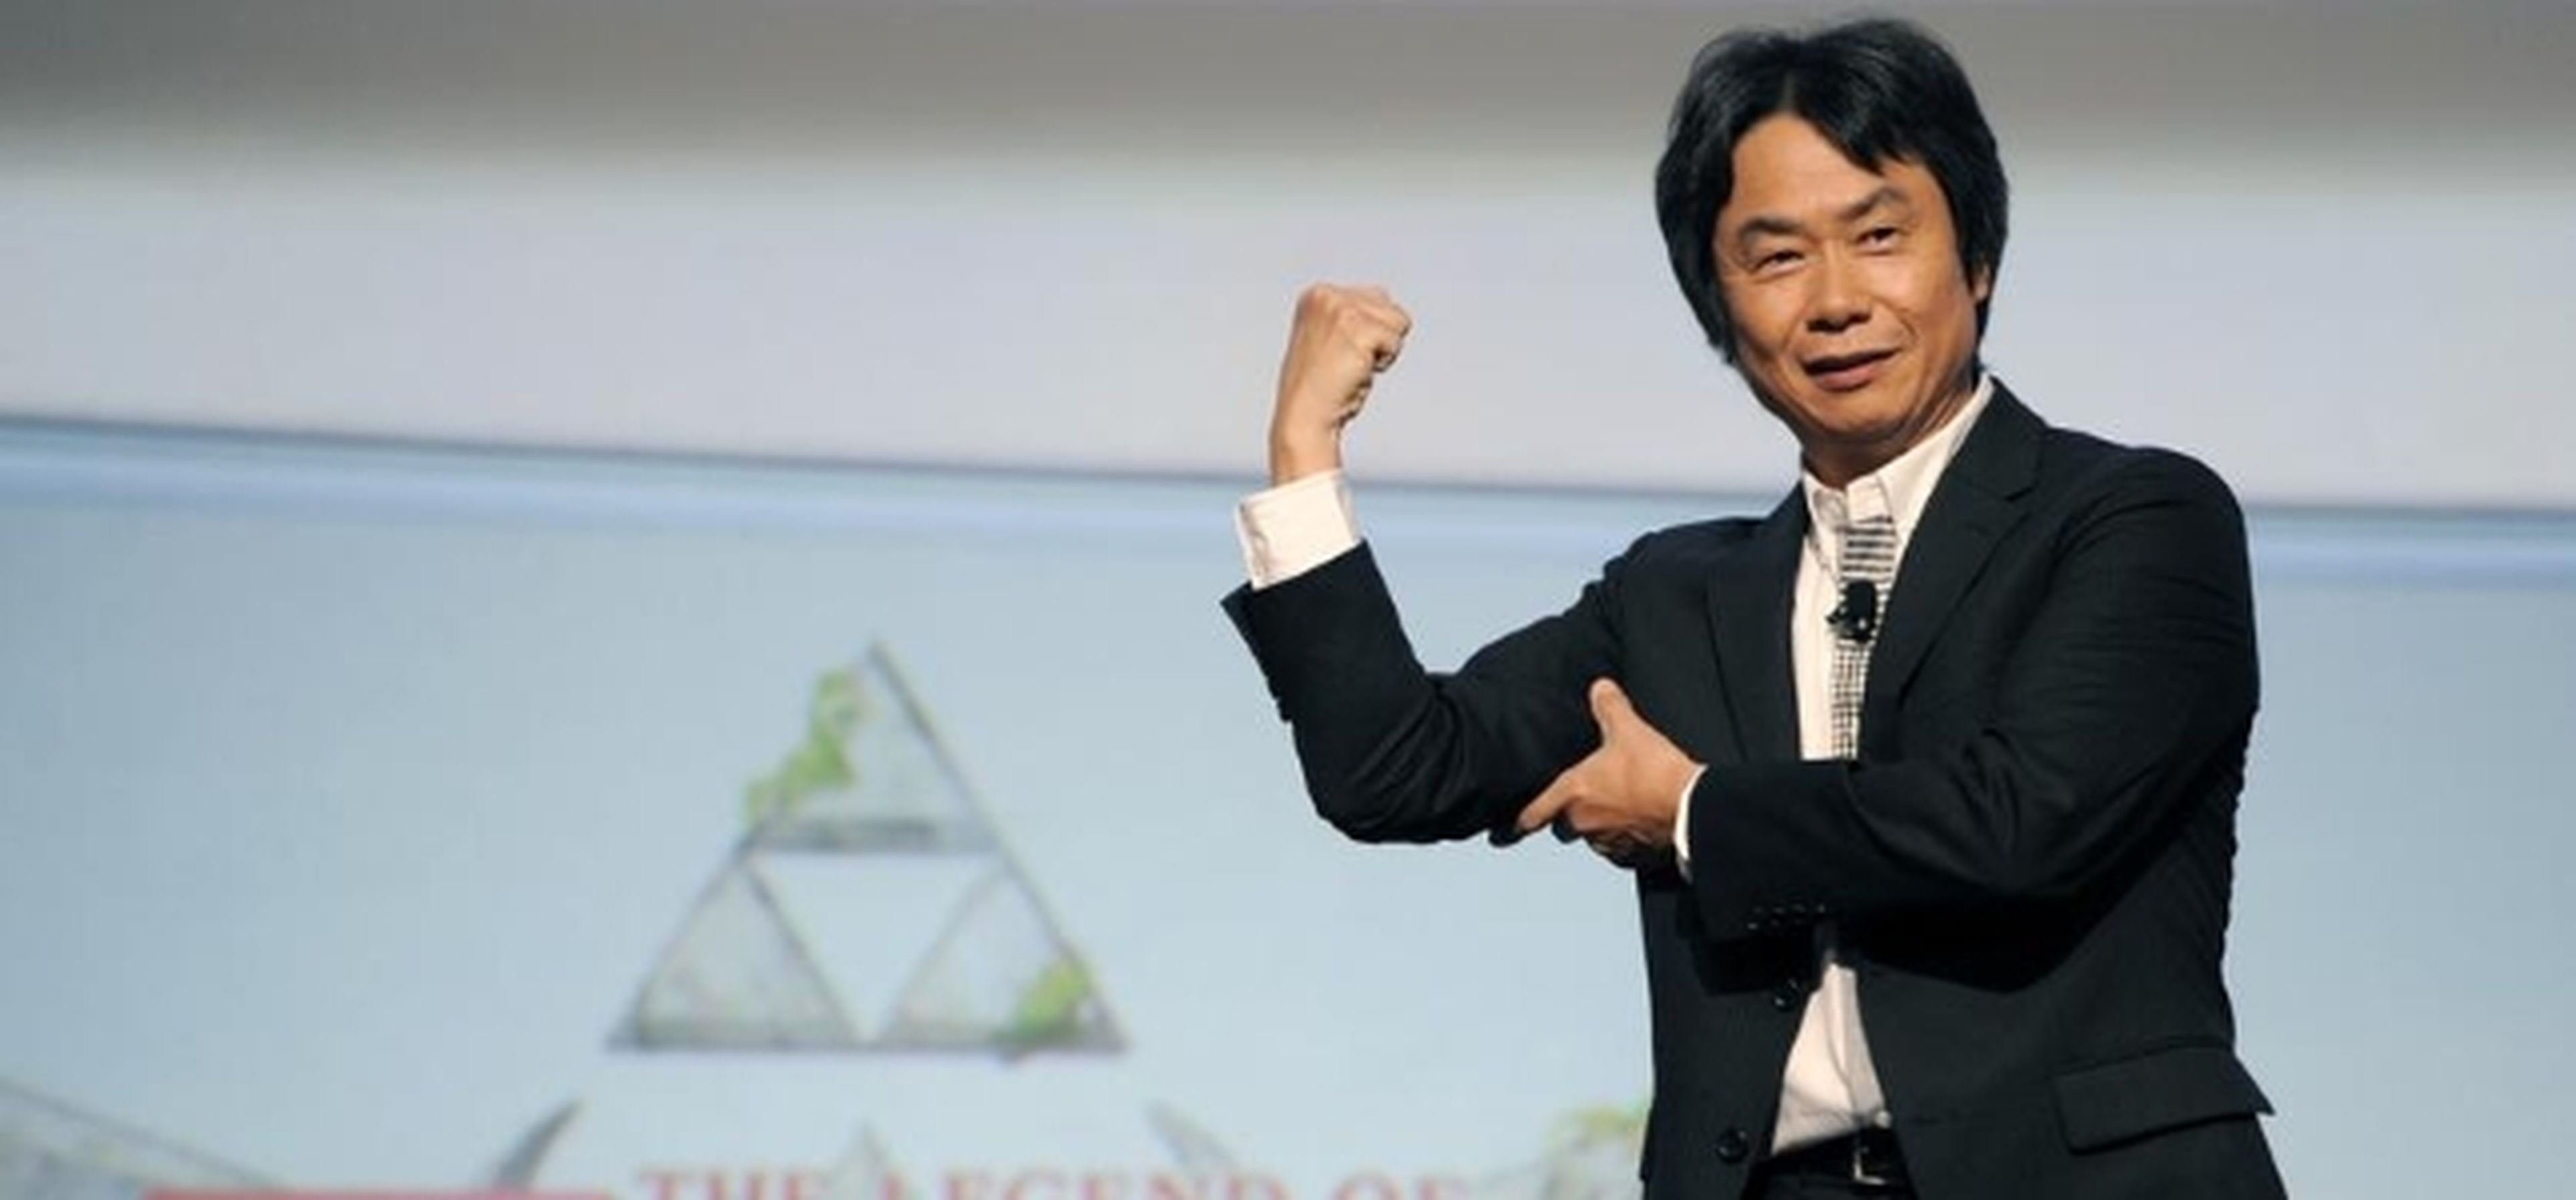 Miyamoto critica la industria, Juego de Tronos en Sevilla... Las noticias de la semana: 06/07/14